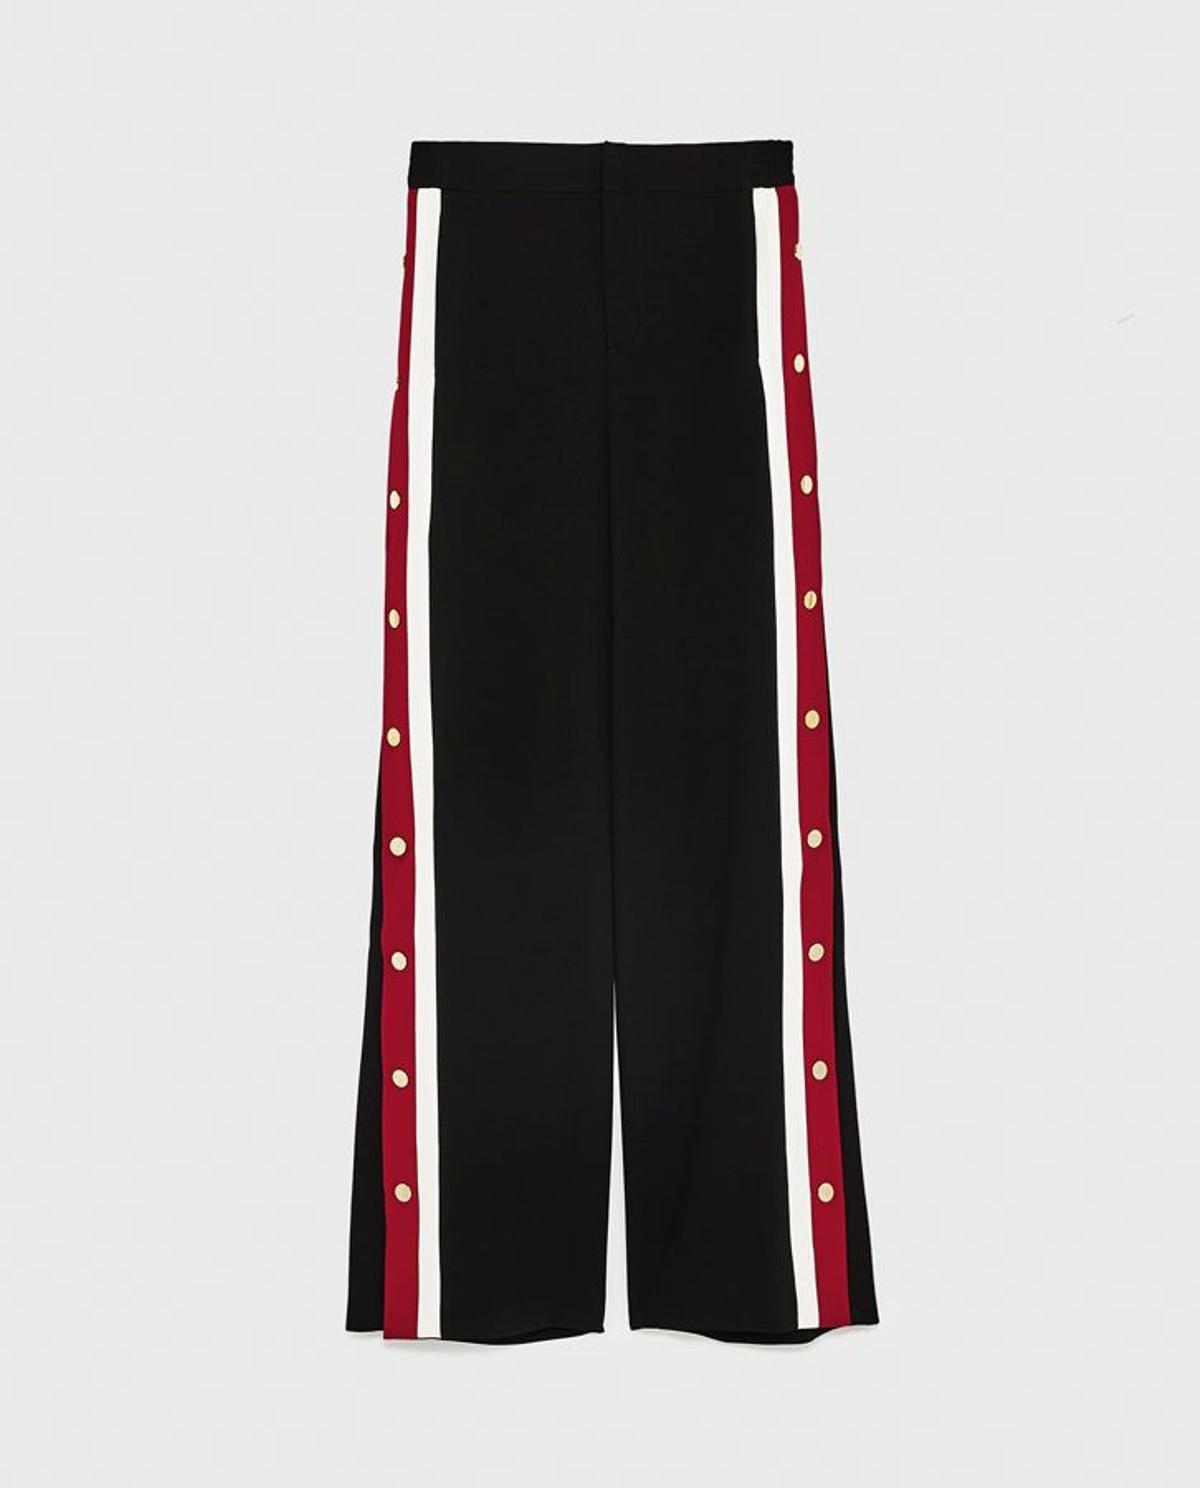 'Shopping' para el Black Friday: pantalón con bandas laterales, de Zara